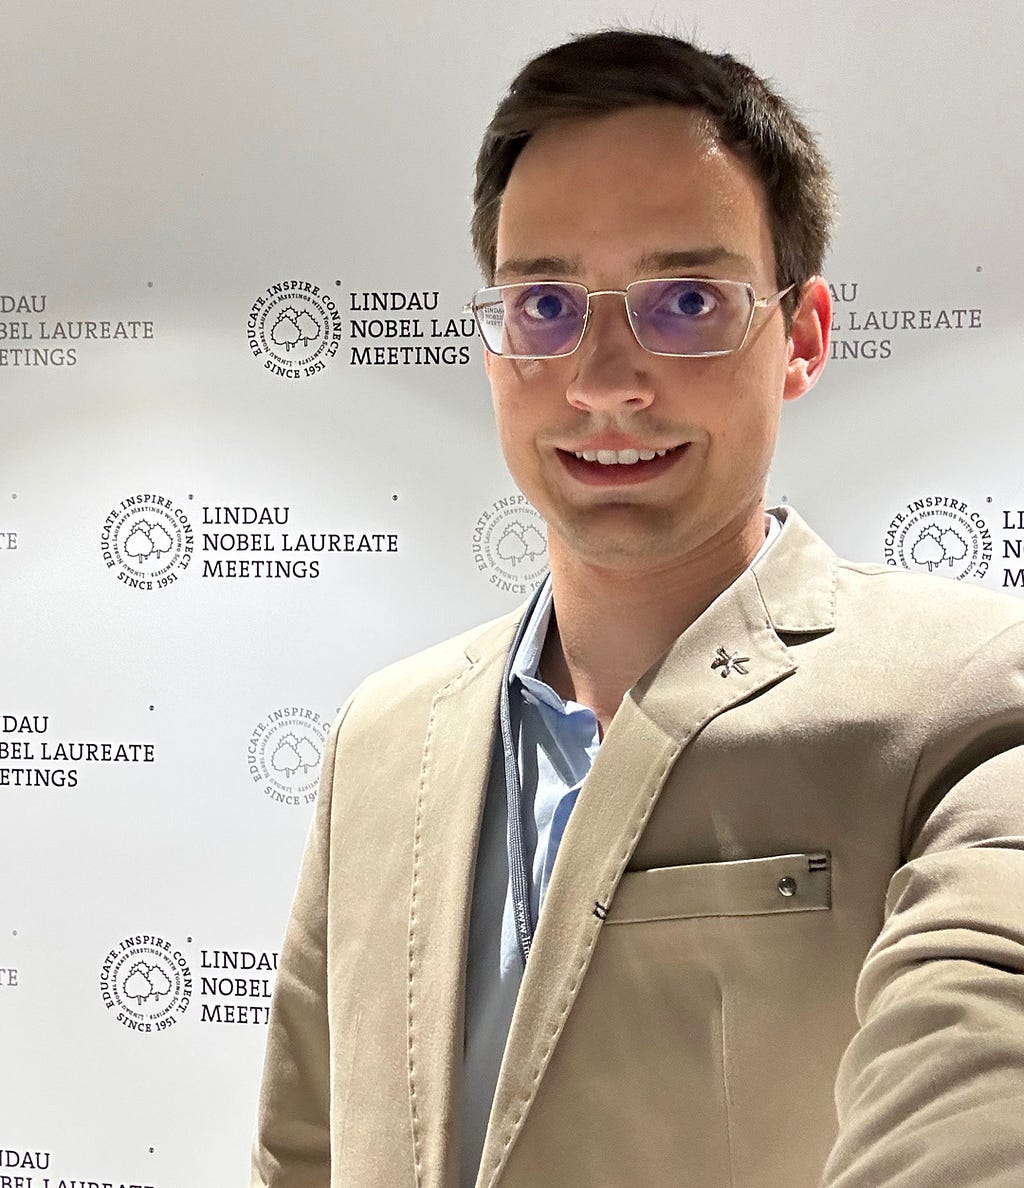 Selfie de Gustavo Rosa Gameiro, ele é um homem branco jovem, usa óculos, paletó beje e camisa azul e ao fundo está uma parede com o marca e texto do “Lindau Nobel Laureate Meetings”